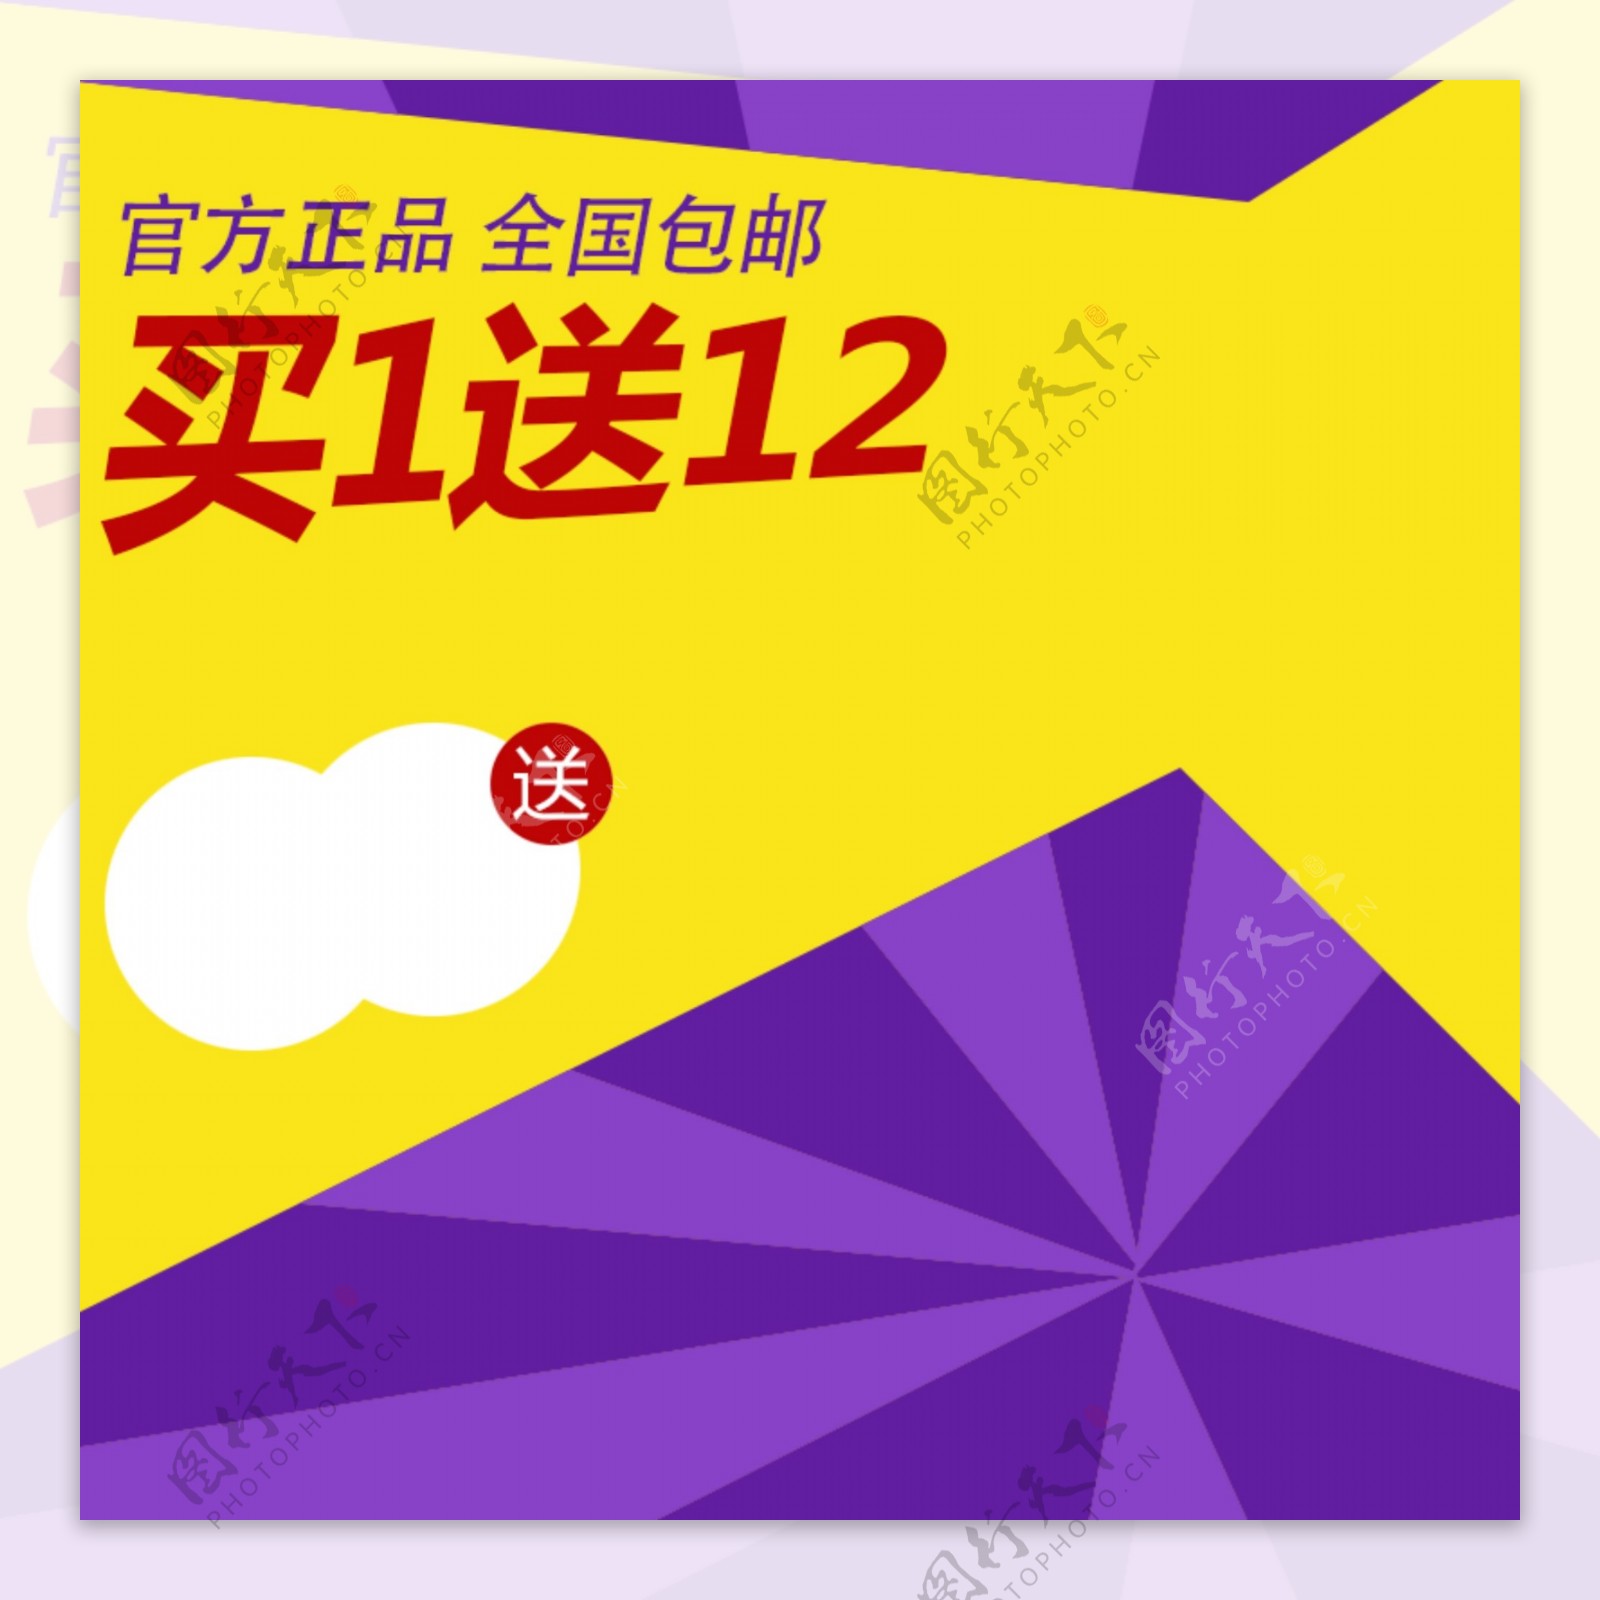 黄紫促销推广图